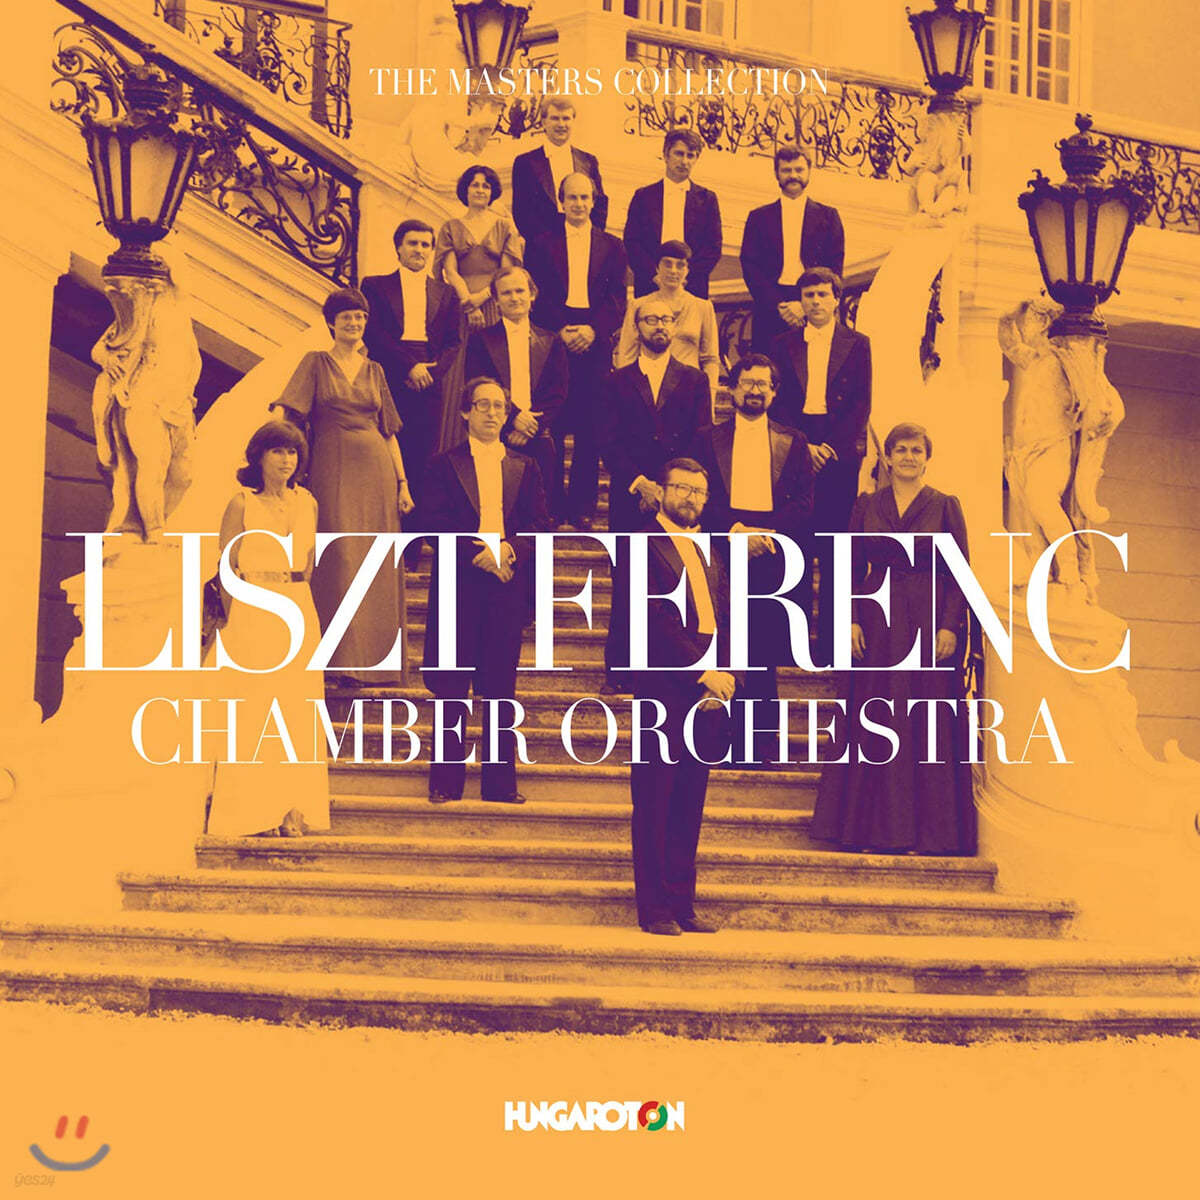 리스트 챔버 오케스트라 연주 모음집 (The Masters Collection - Franz Liszt Chamber Orchestra) 